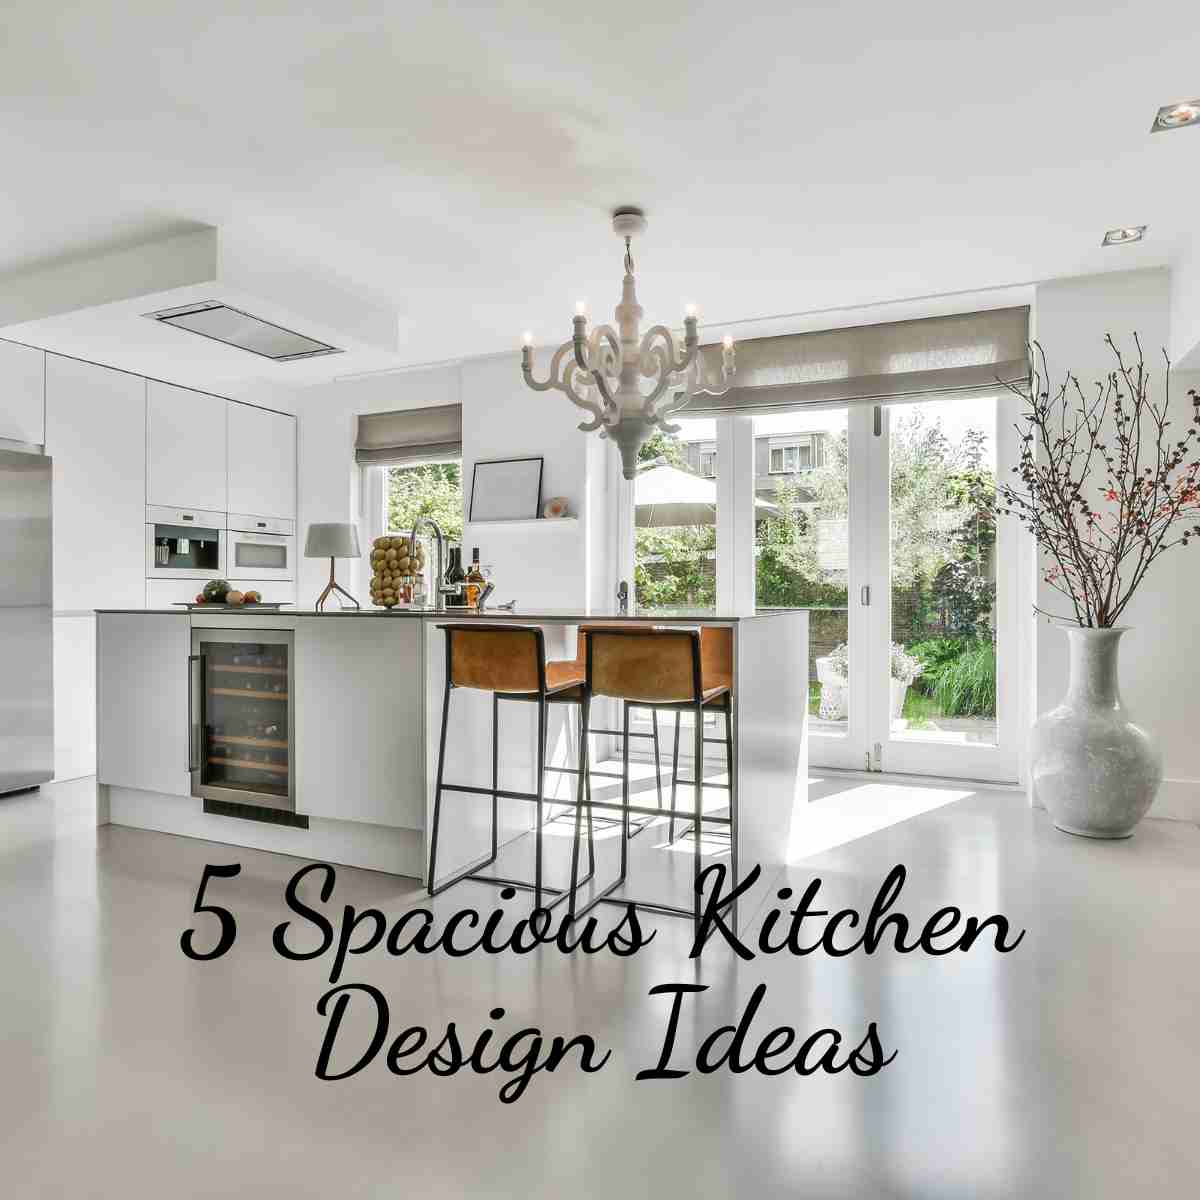 Spacious Kitchen Design Ideas